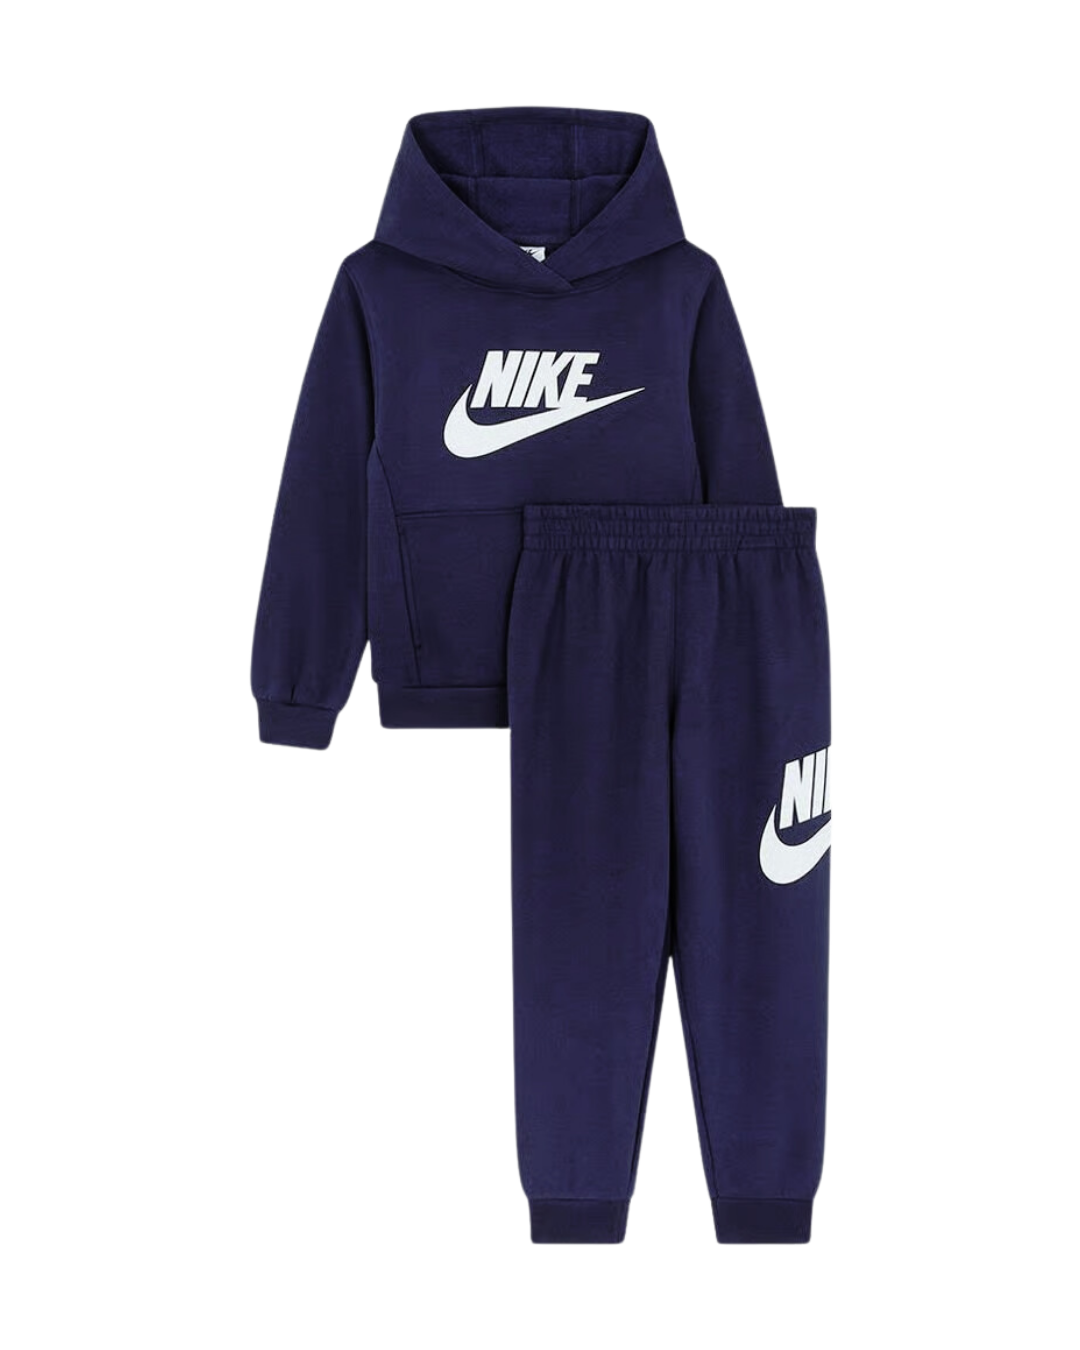  Survêtement Nike Enfant